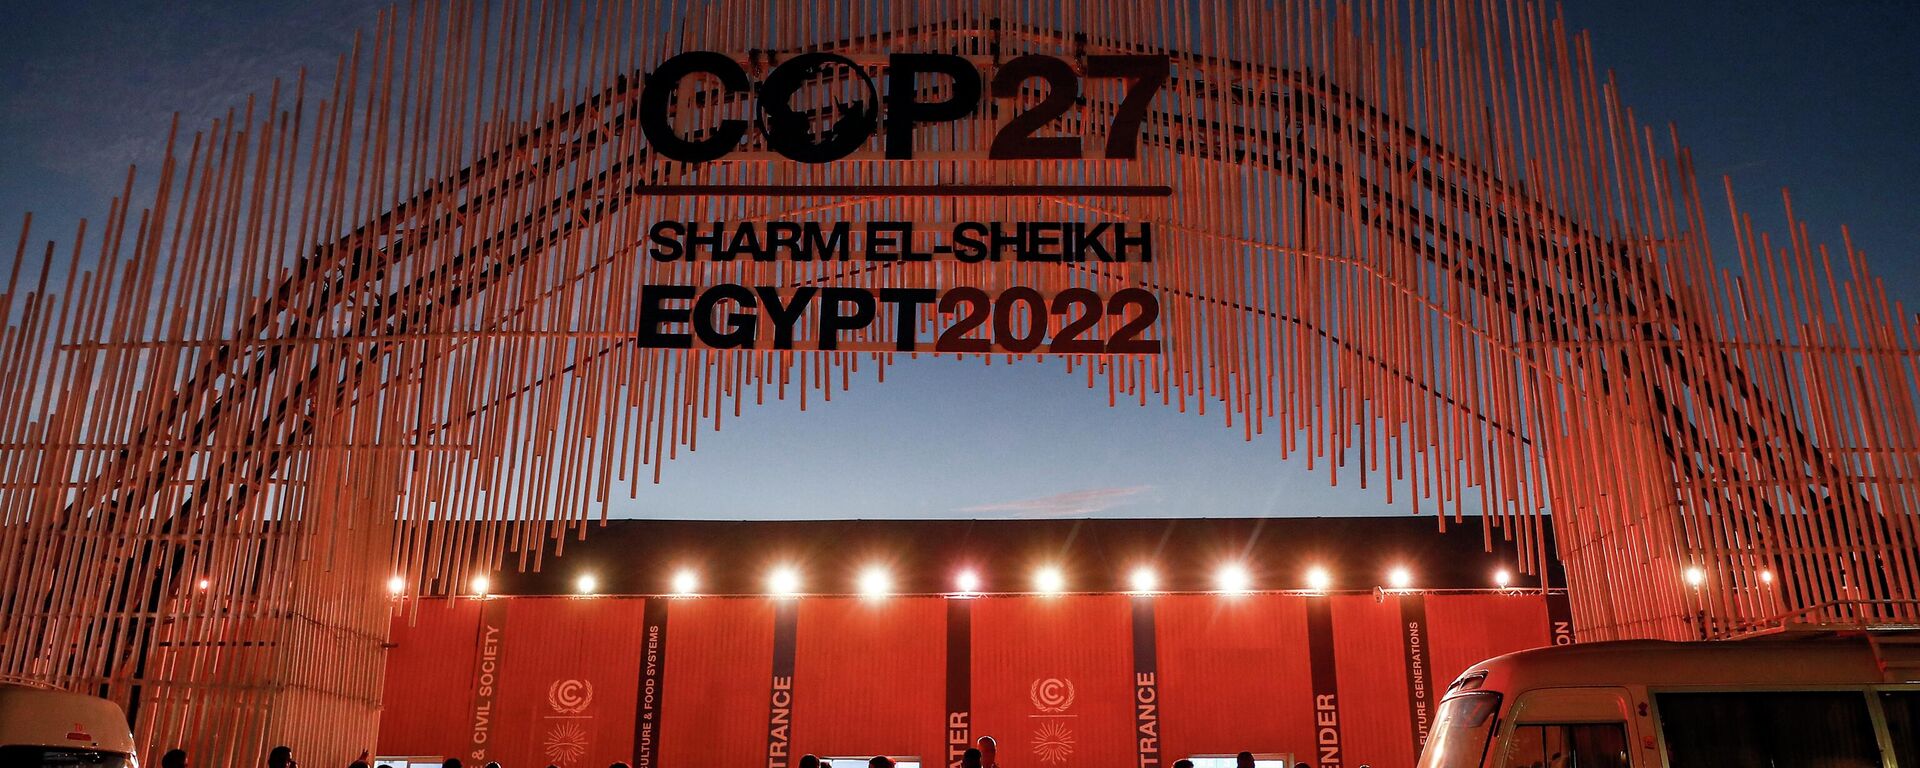 Delegates arrive at the COP27 climate conference in Egypt's Red Sea resort city of Sharm el-Sheikh on November 7, 2022 - Sputnik International, 1920, 21.11.2022